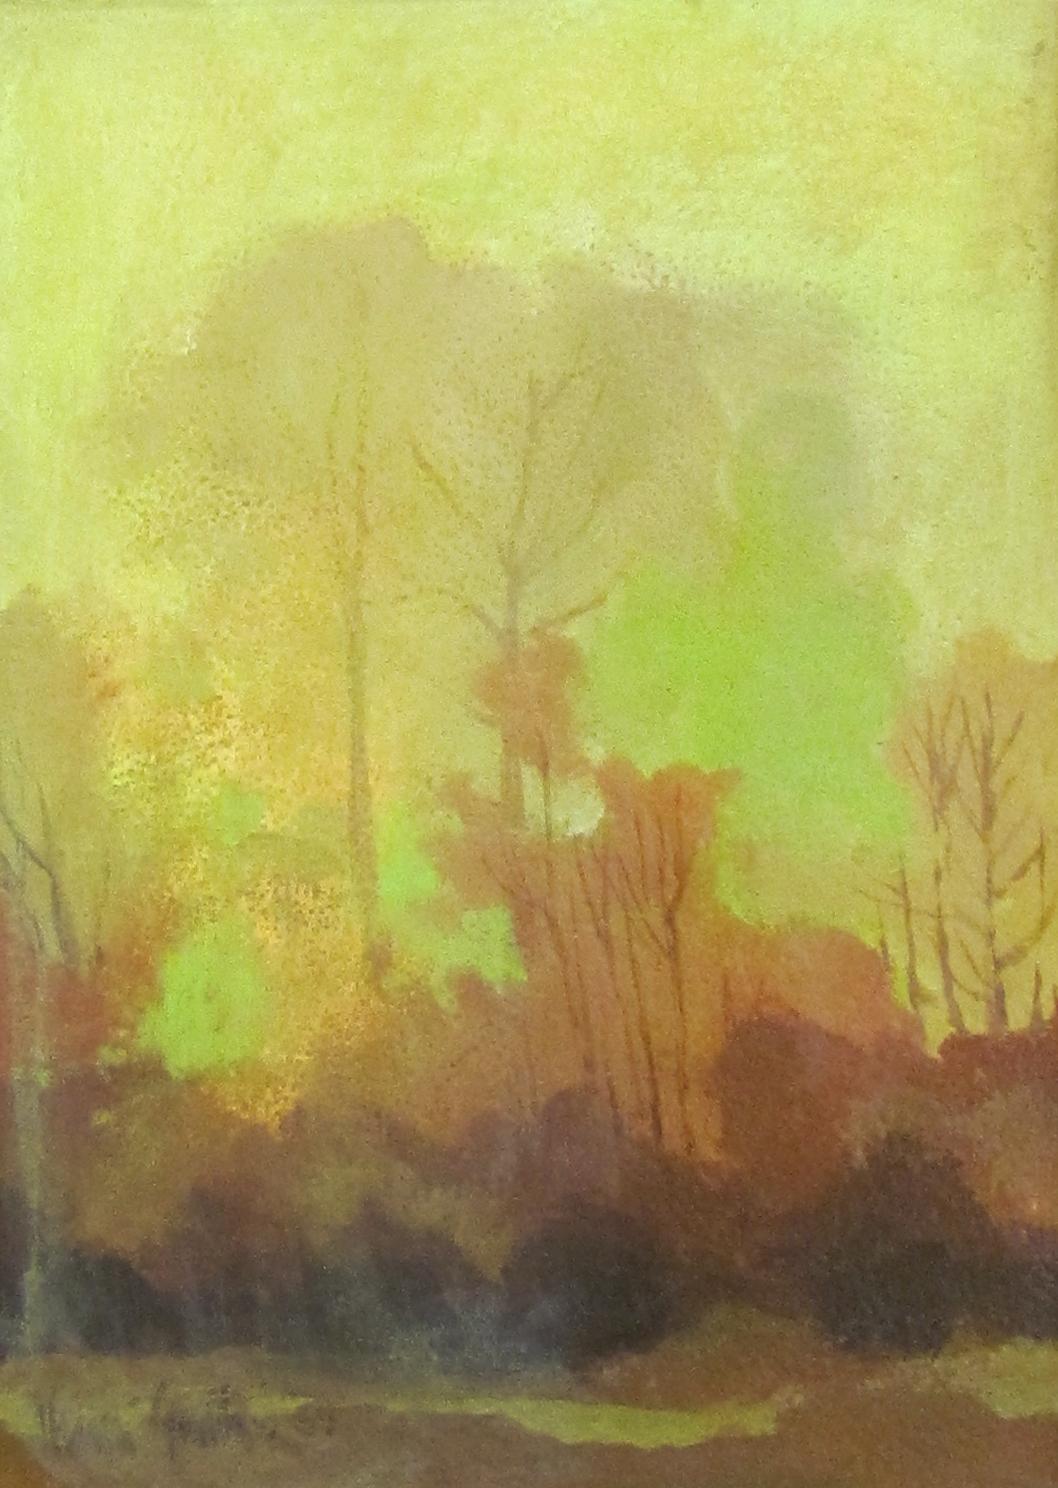 Impressionisit-Landschaft mit Bäumen – Painting von Henri Gadbois